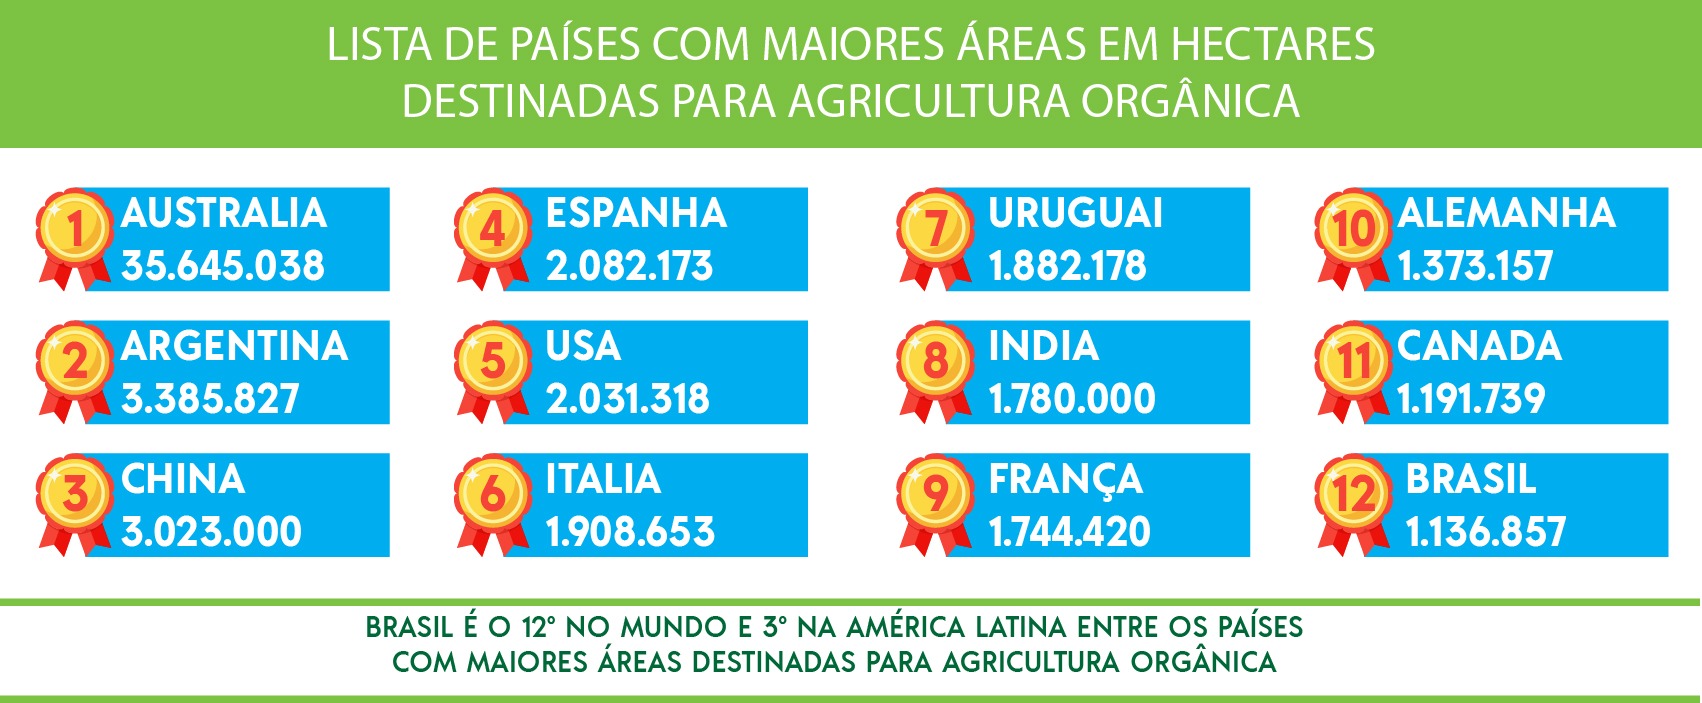 Fonte:  Federação Internacional de Movimentos da Agricultura Orgânica (Ifoam)